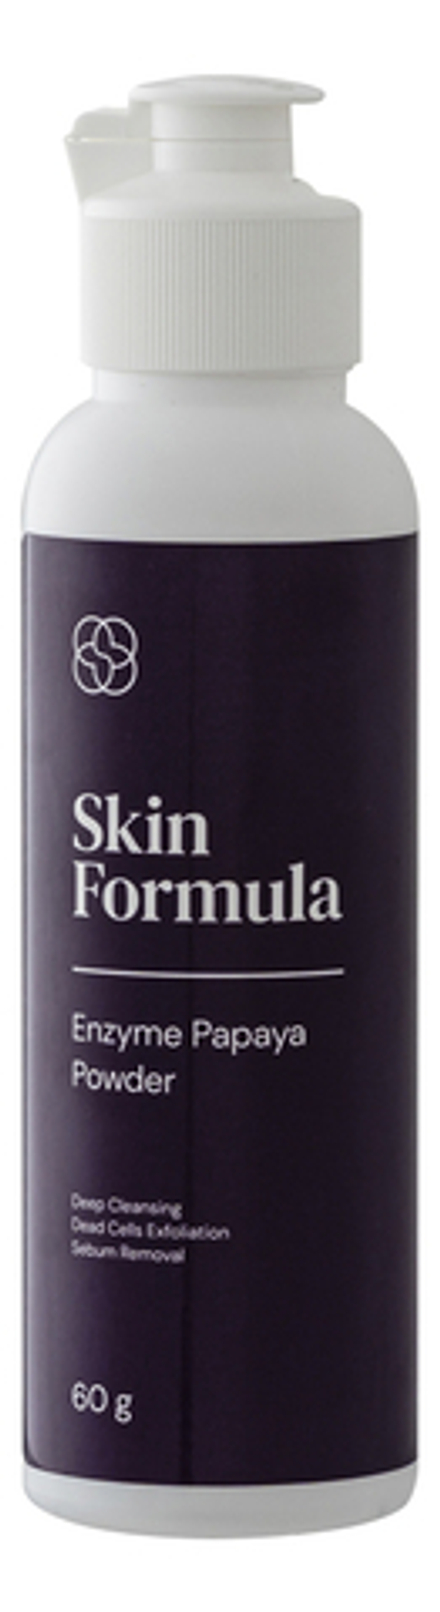 Skin Formula Enzyme Papaya Powder Энзимная пудра для умывания 60 гр